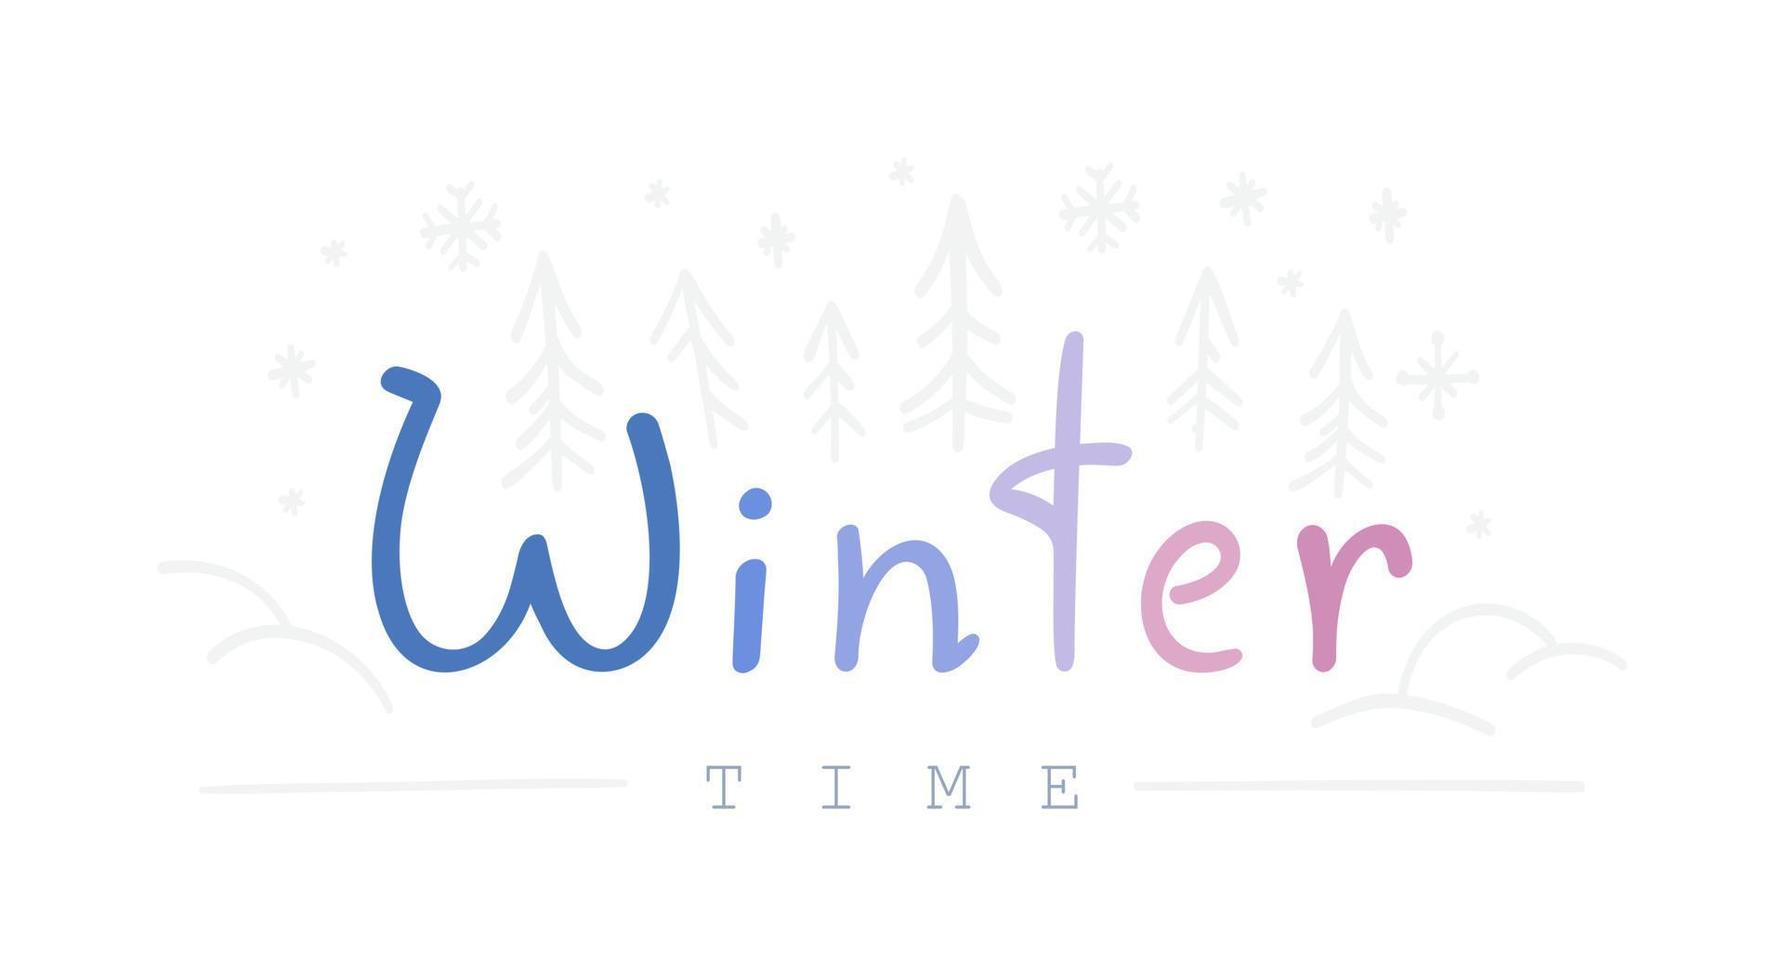 typographie. l'hiver. le lettrage froid de l'hiver. illustration vectorielle de lettrage bleu sur fond blanc. vecteur